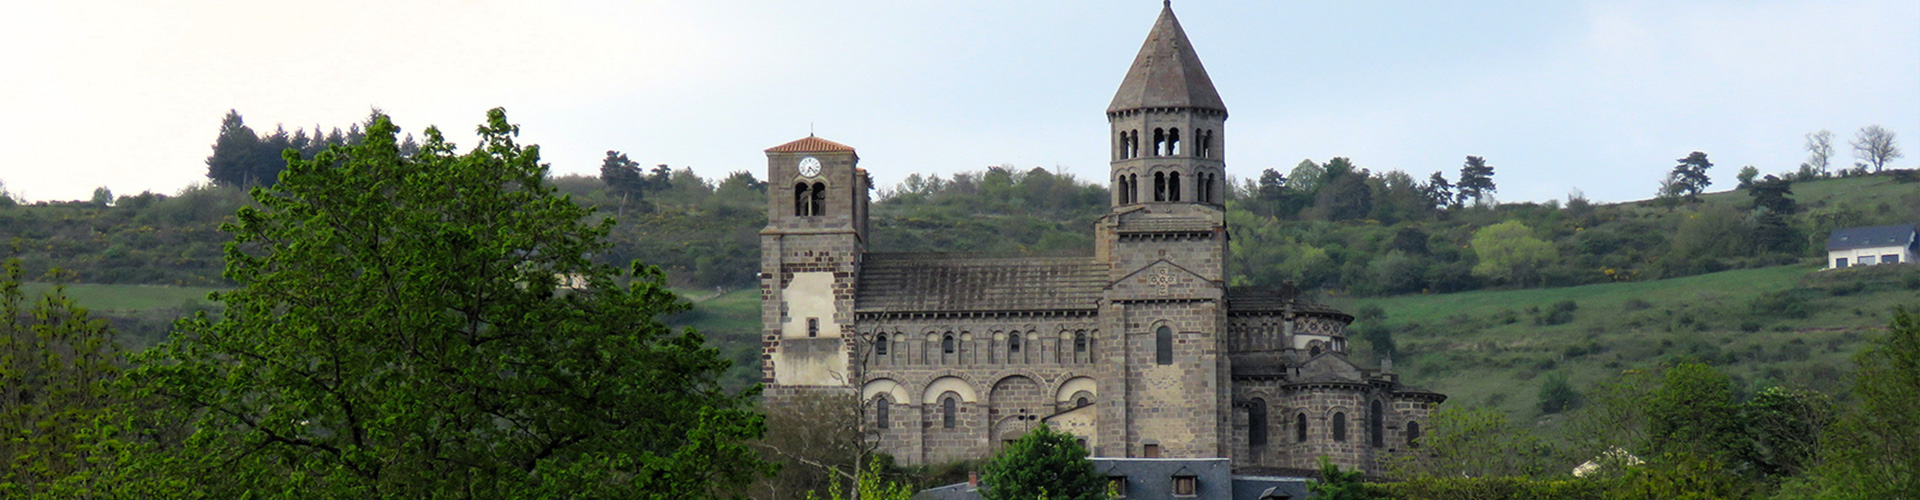 Chateaux églises Gite Issoire 63